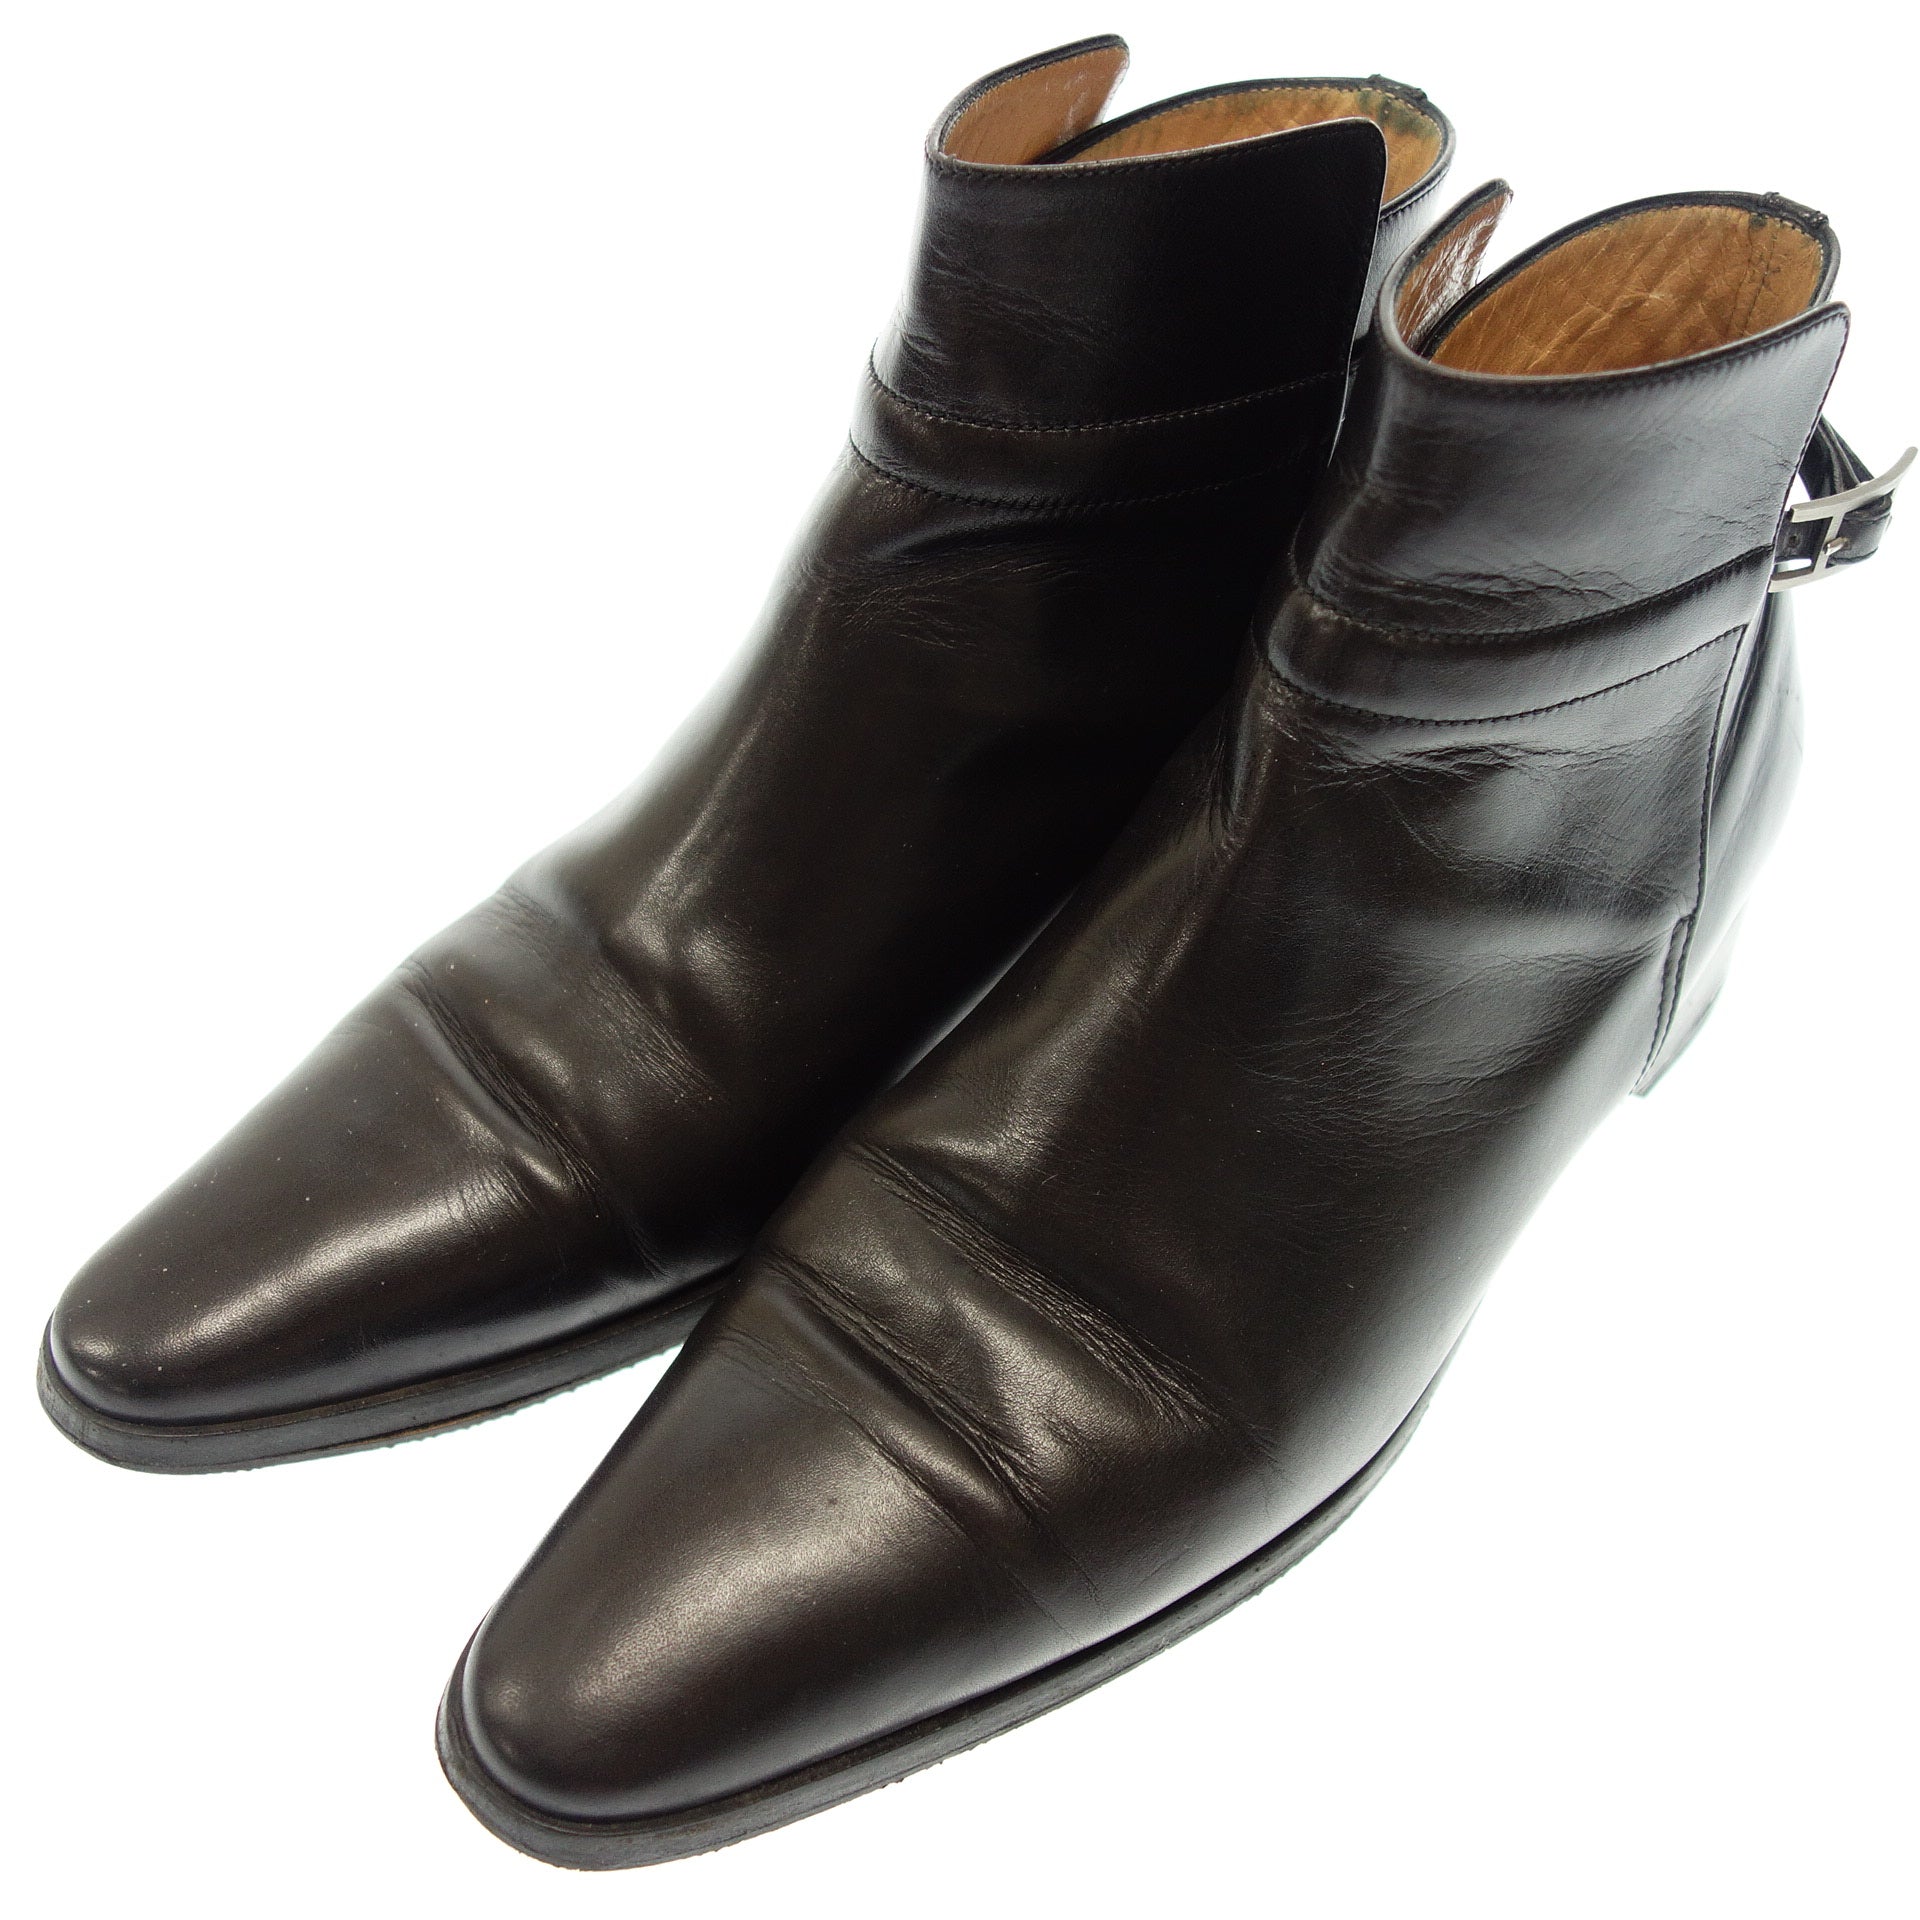 Hermes blackレザーブーツ 24.5cm靴 - aconsoft.com